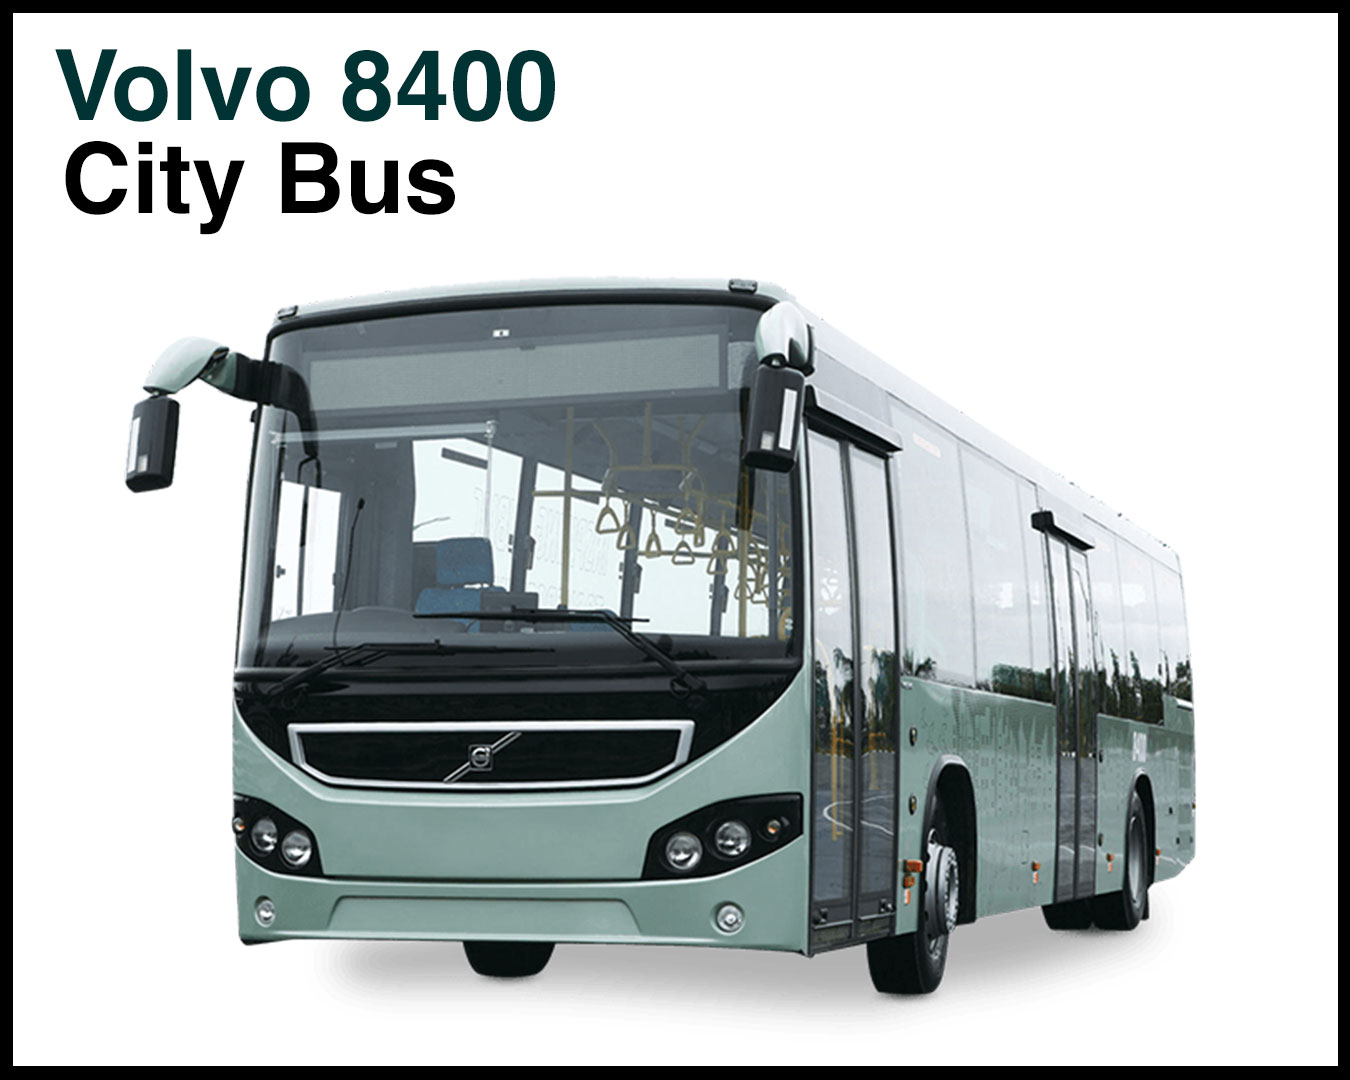 Volvo bus price-8400-City-Bus